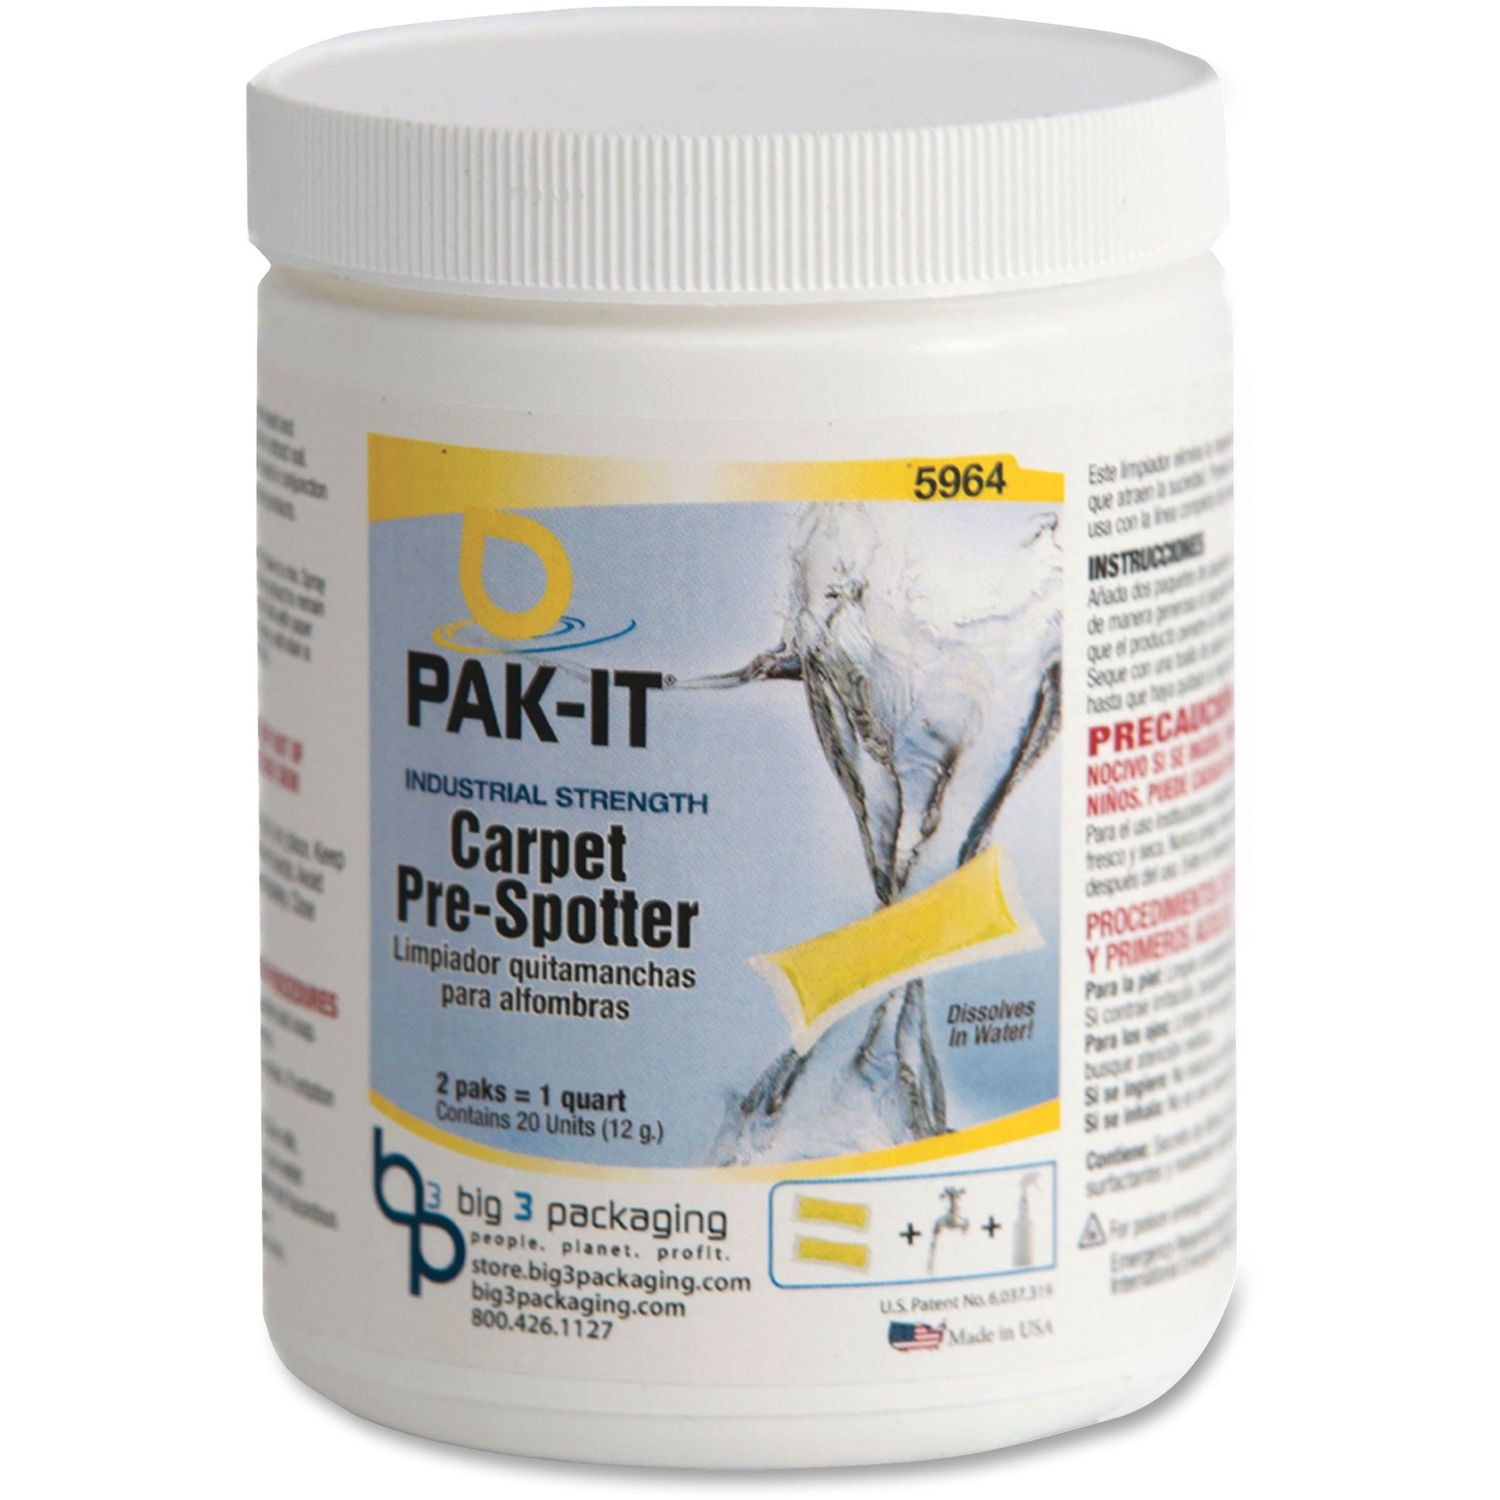 Pak-It Carpet Pre-Spotter Citrus Scent, 20 / Pack, Yellow